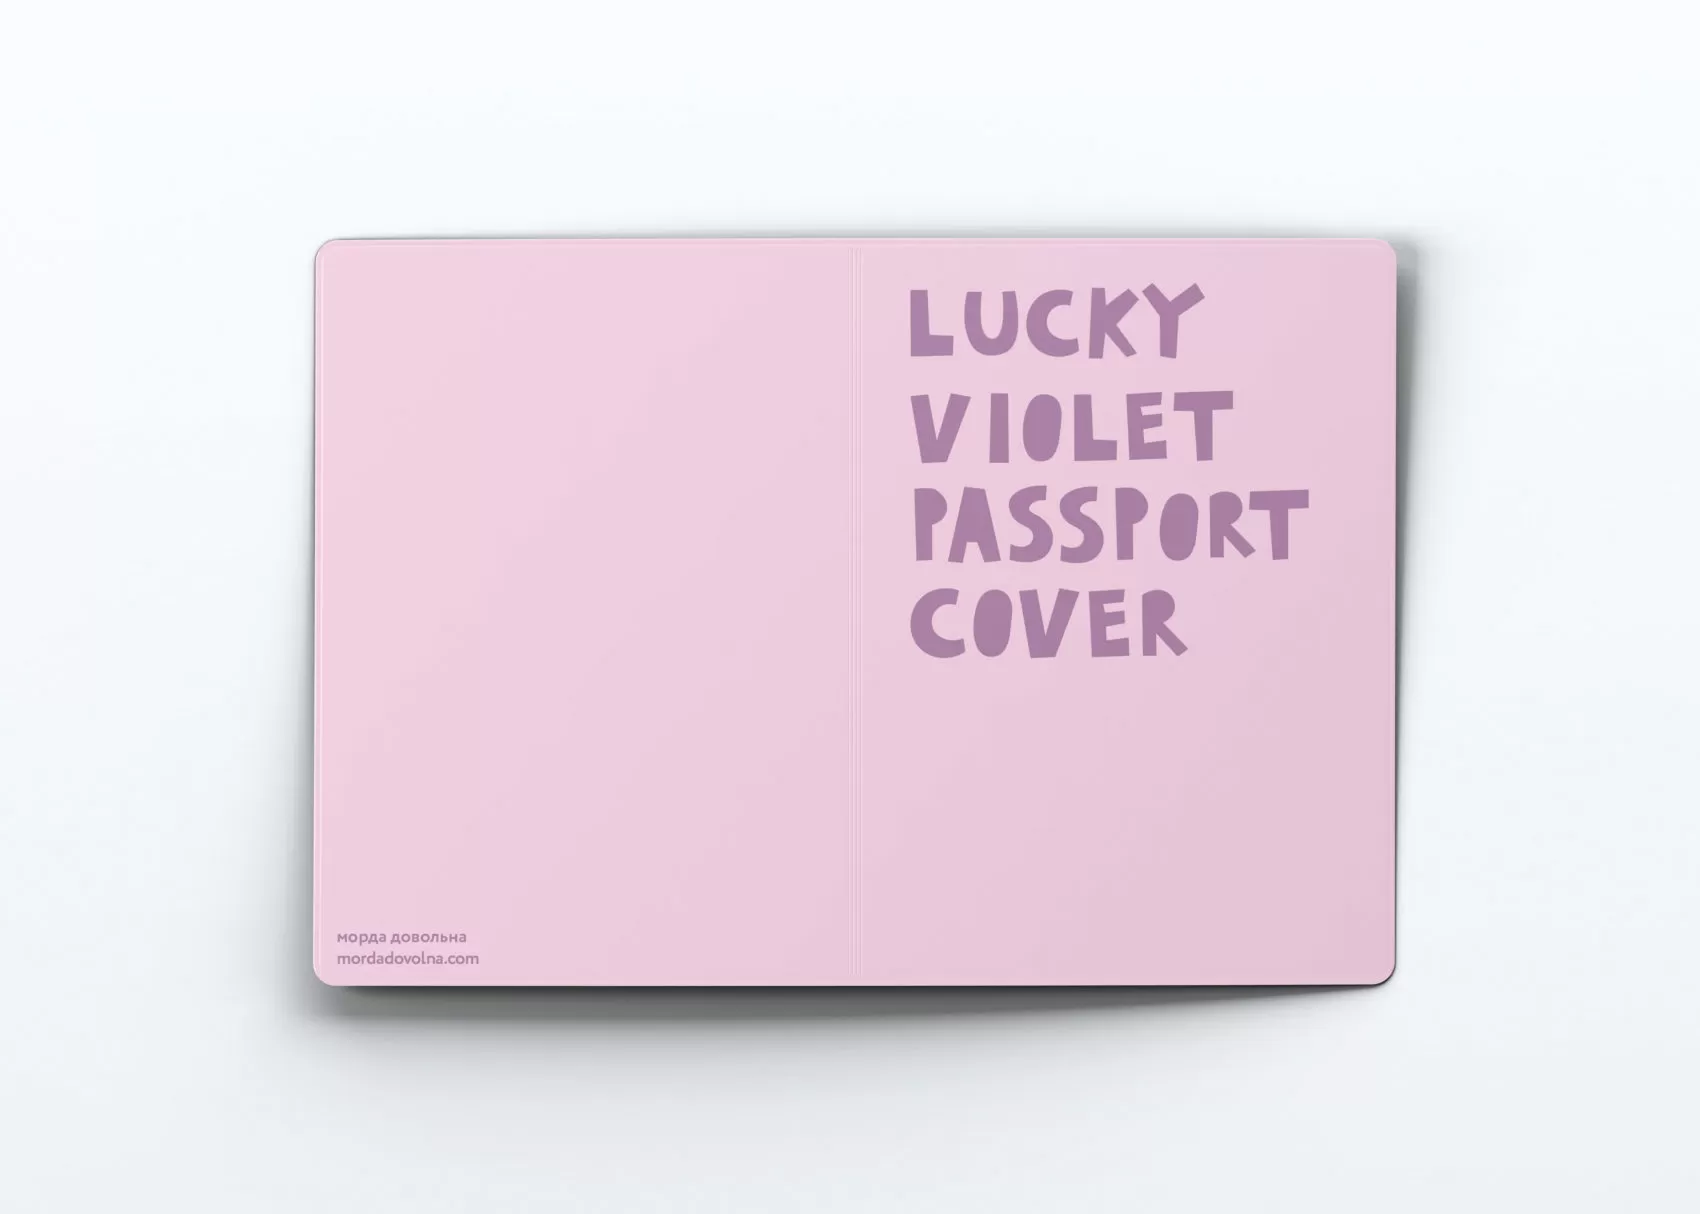 Обложка на паспорт Lucky violet passport cover